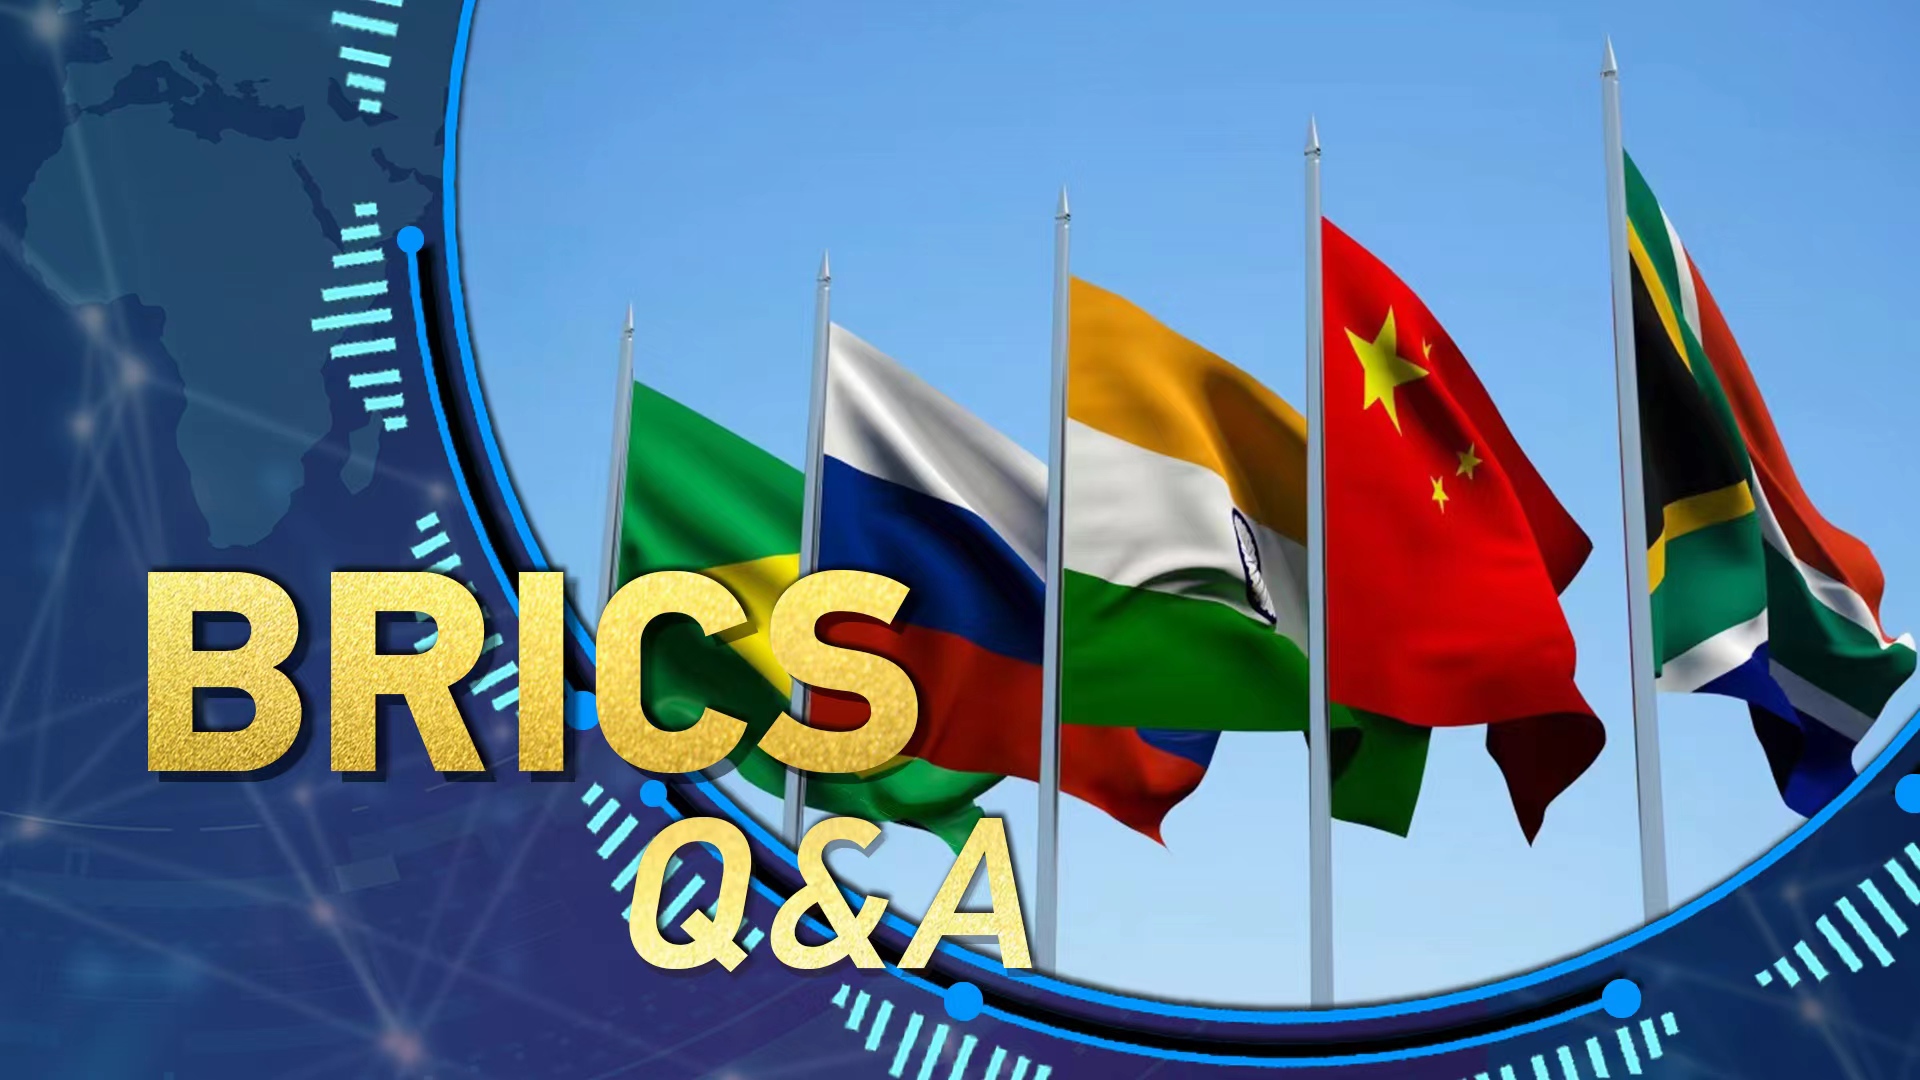 BRICS Q&A: What is the BRICS mechanism?